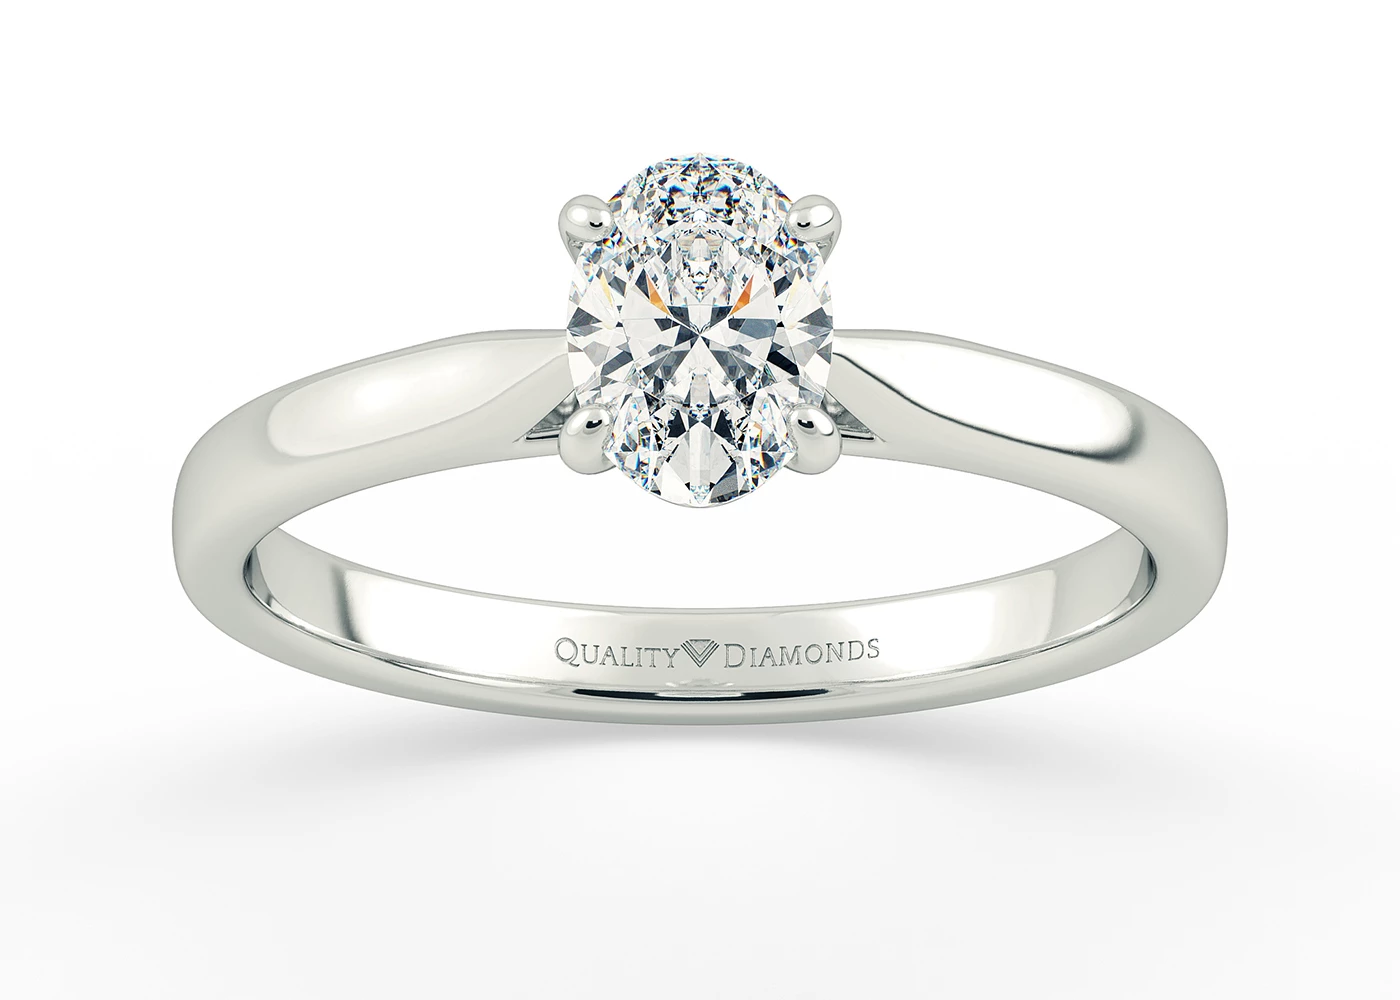 Oval Clara Diamond Ring in 9K White Gold